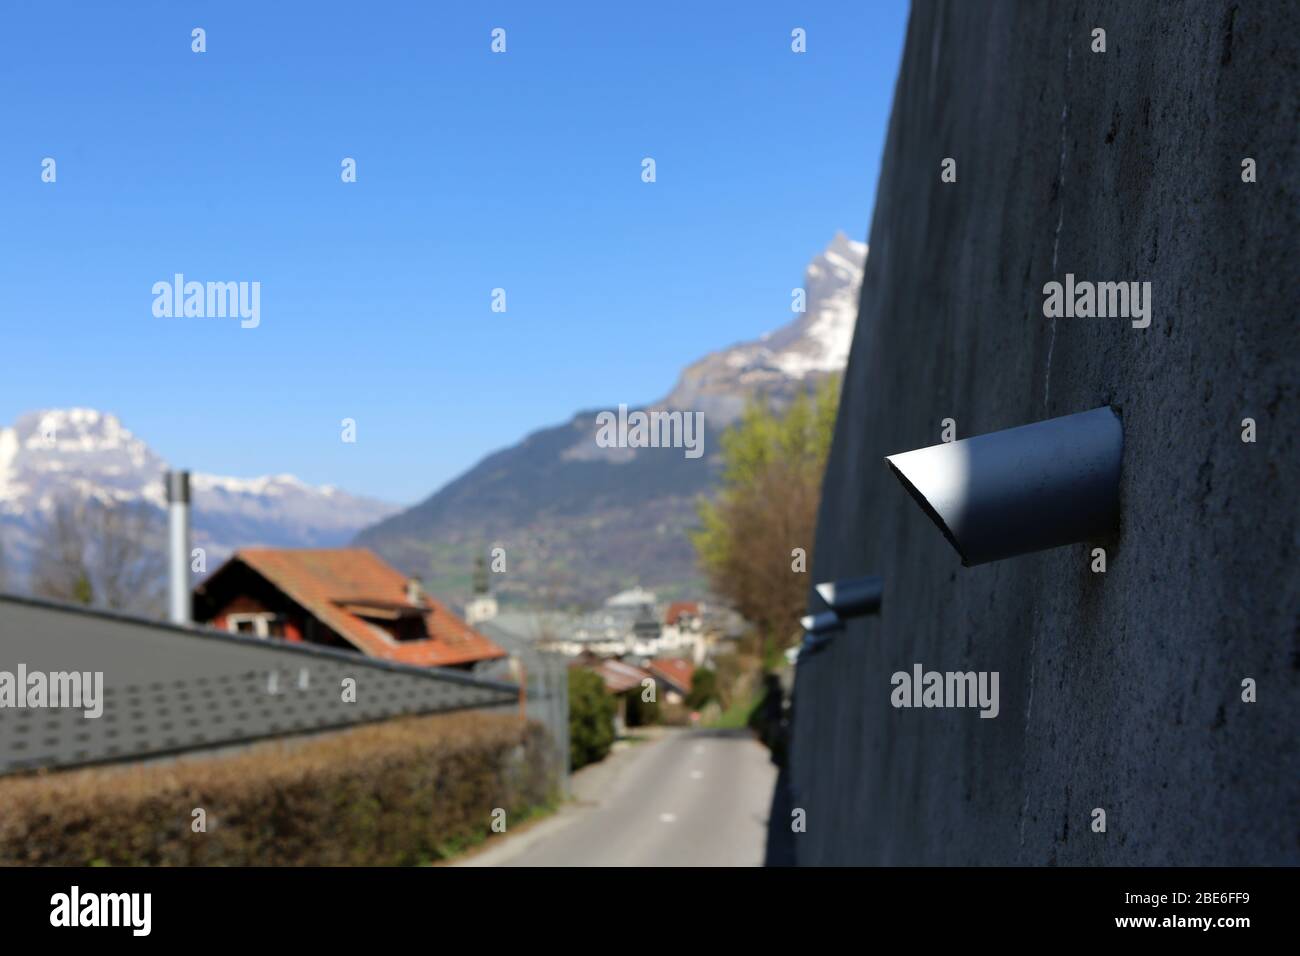 Tuyaux sur un mur permettant l'écoulement de l'eau sur la route. Saint-Gervais-les-bains. Haute-Savoie. France. Banque D'Images